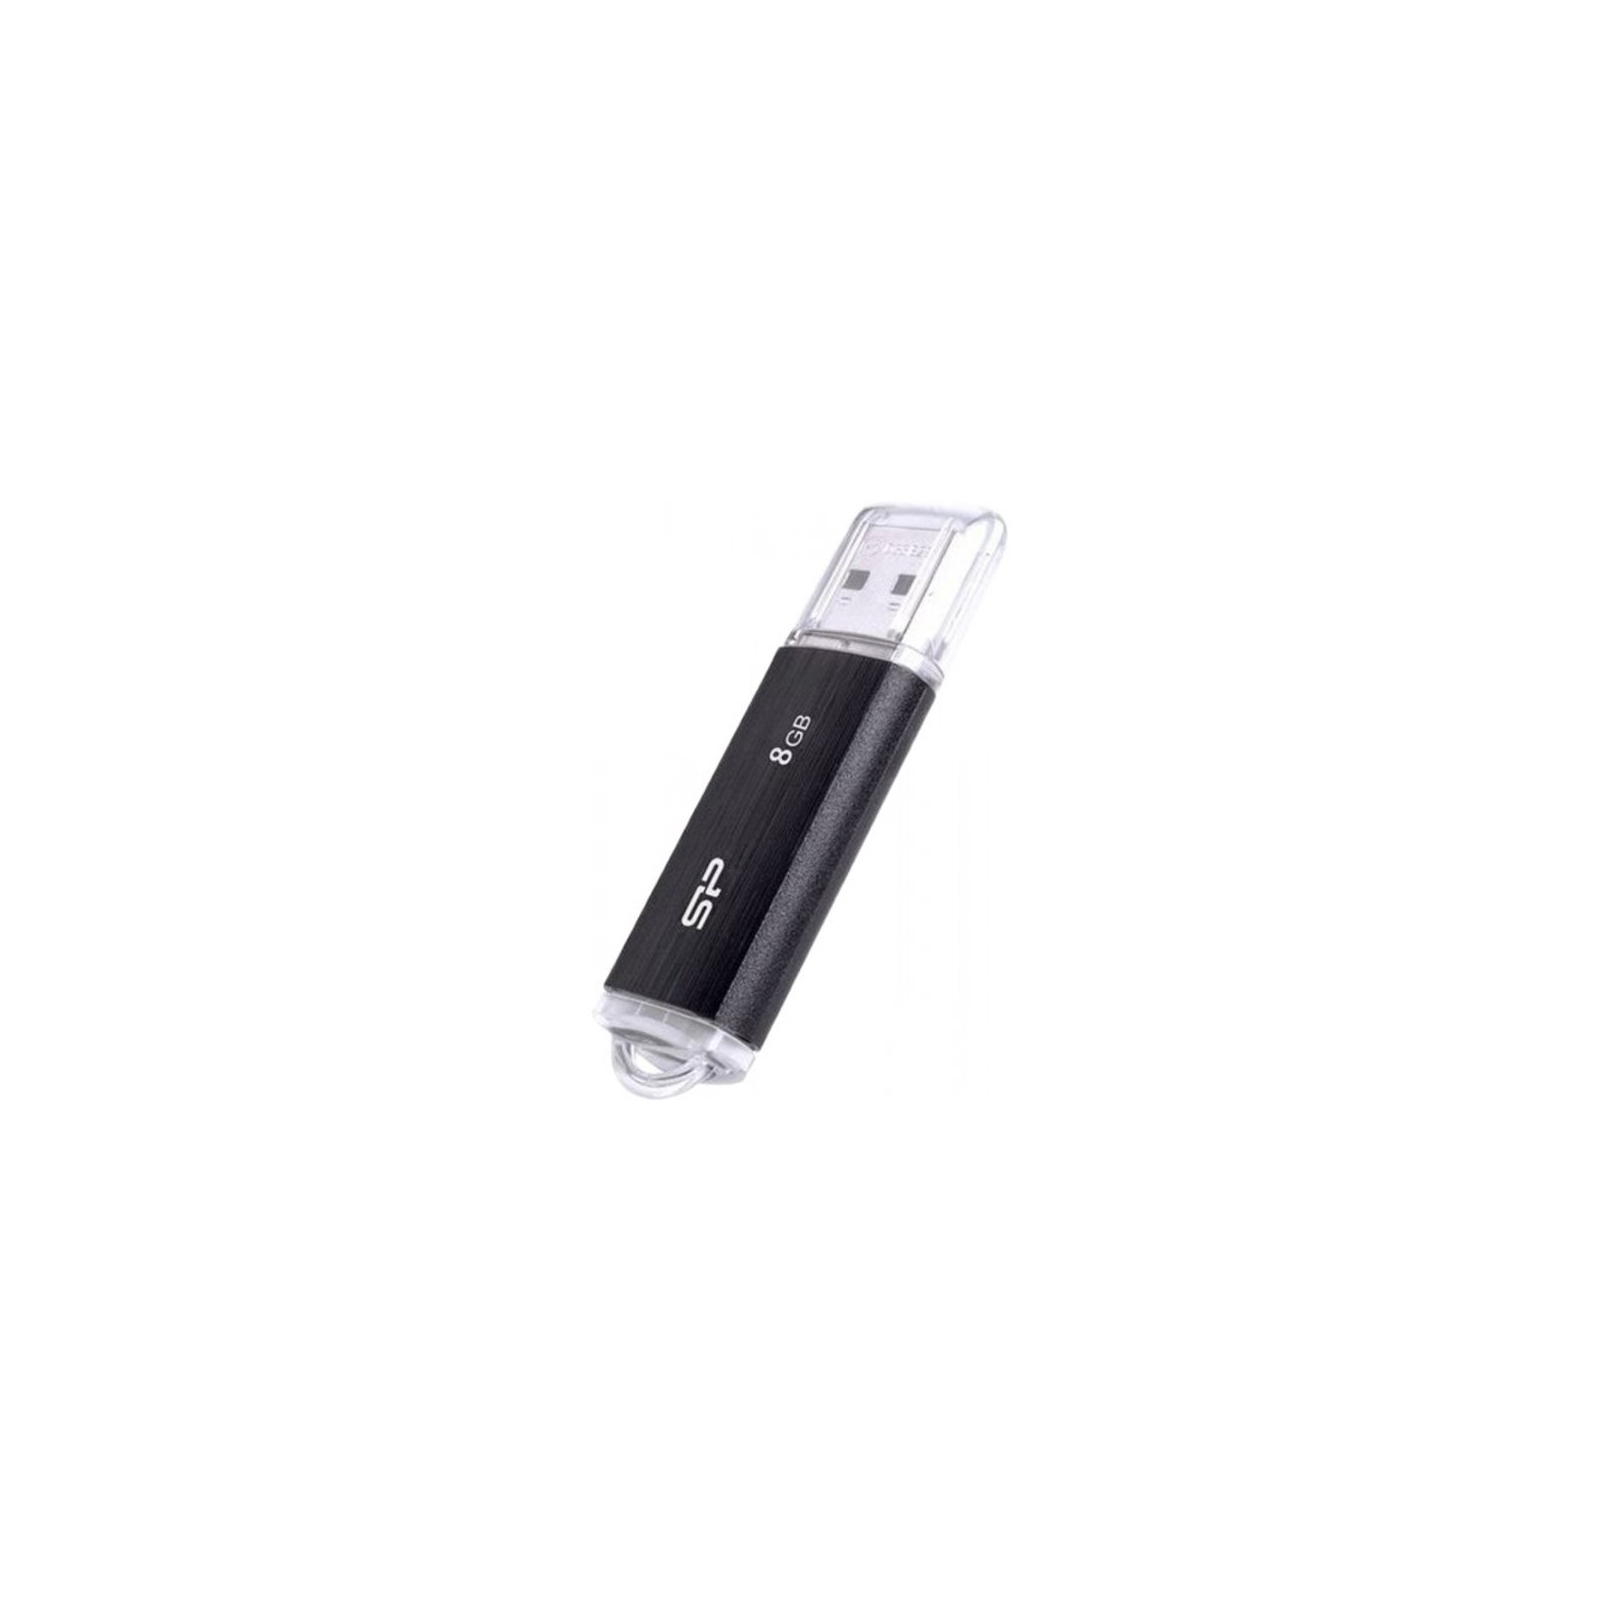 USB флеш накопичувач Silicon Power 8GB Ultima U02 Black USB 2.0 (SP008GBUF2U02V1K) зображення 2